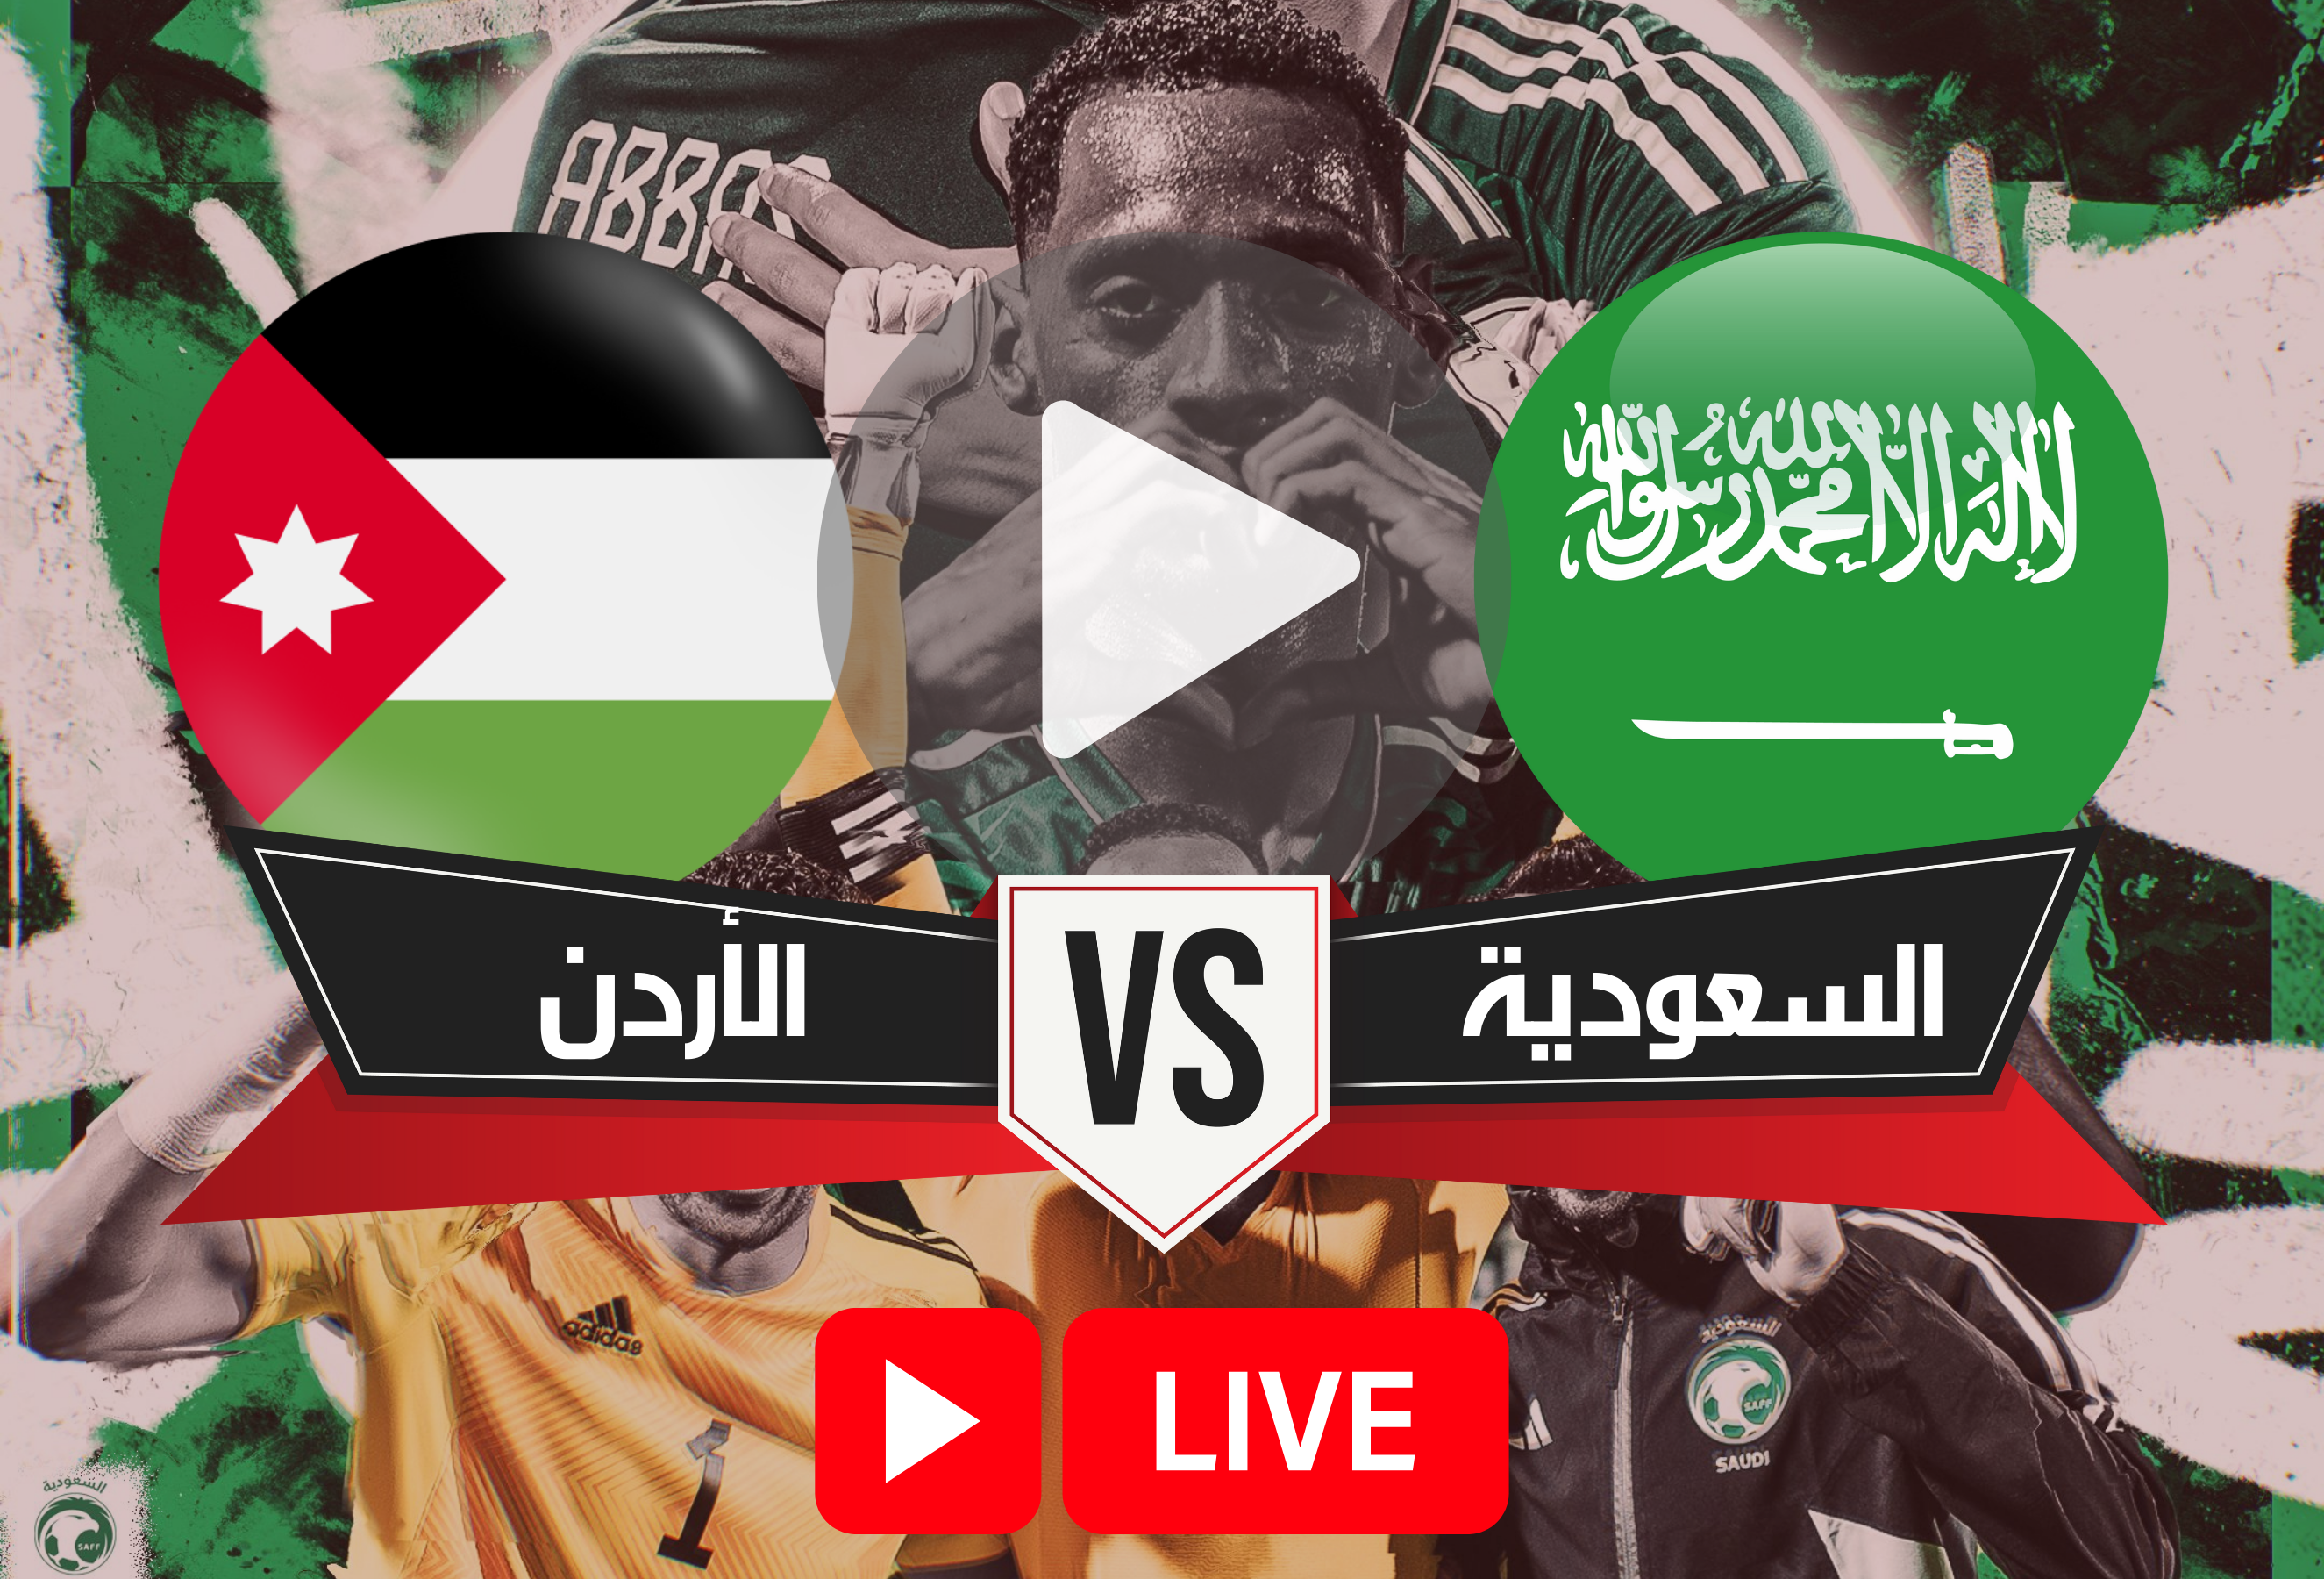 SaudiArabia vs Jordan Live